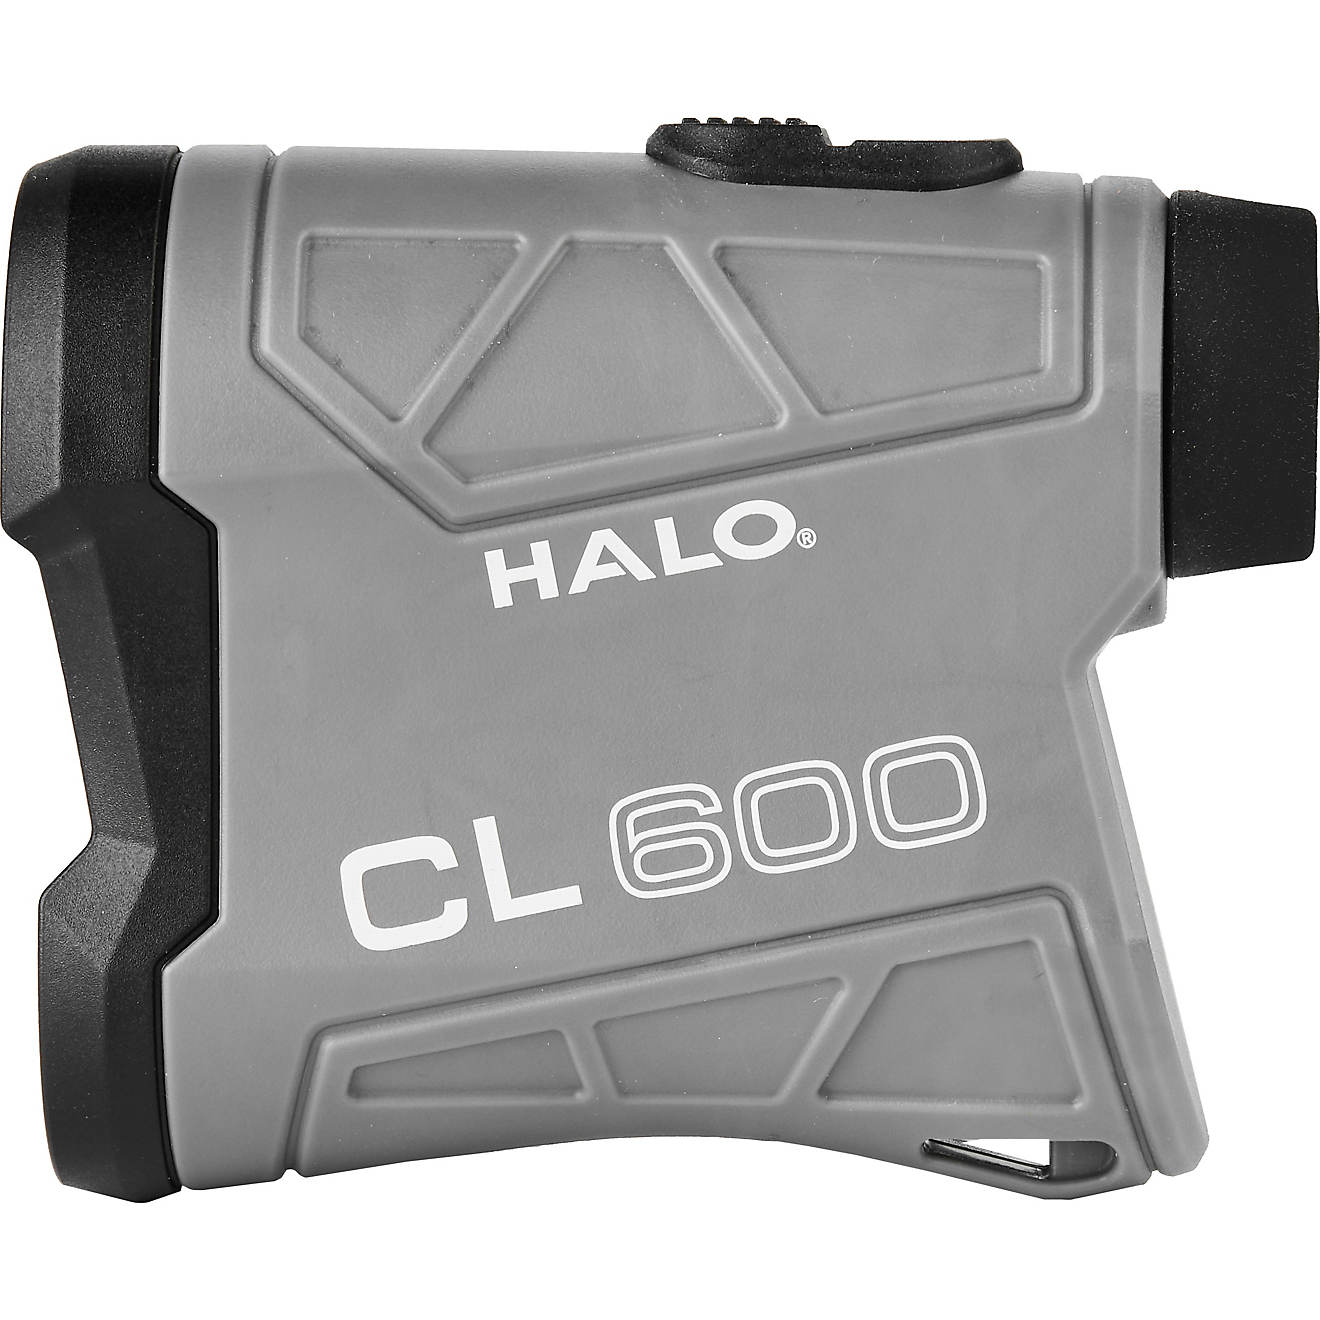 HALO CL600 5x Laser Range Finder                                                                                                 - view number 1